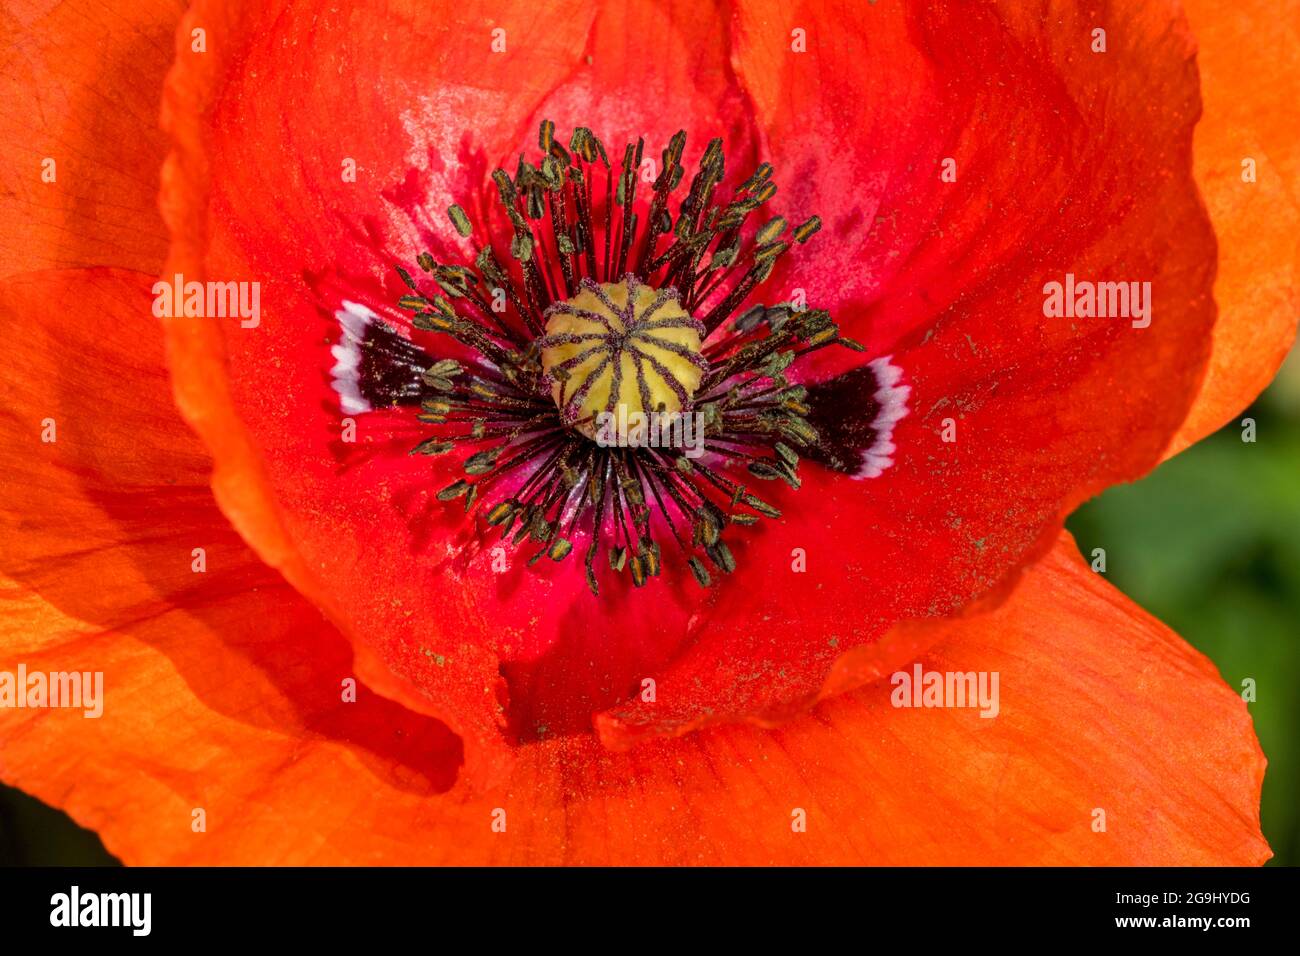 Mohnblume / Maismohnblume / Feldmohnblume / Flandern-Mohnblume / Rotmohn (Papaver rhoeas) in Blüte mit Blütenblättern, Stigma und Staubgefäßen / Ausdauer Stockfoto